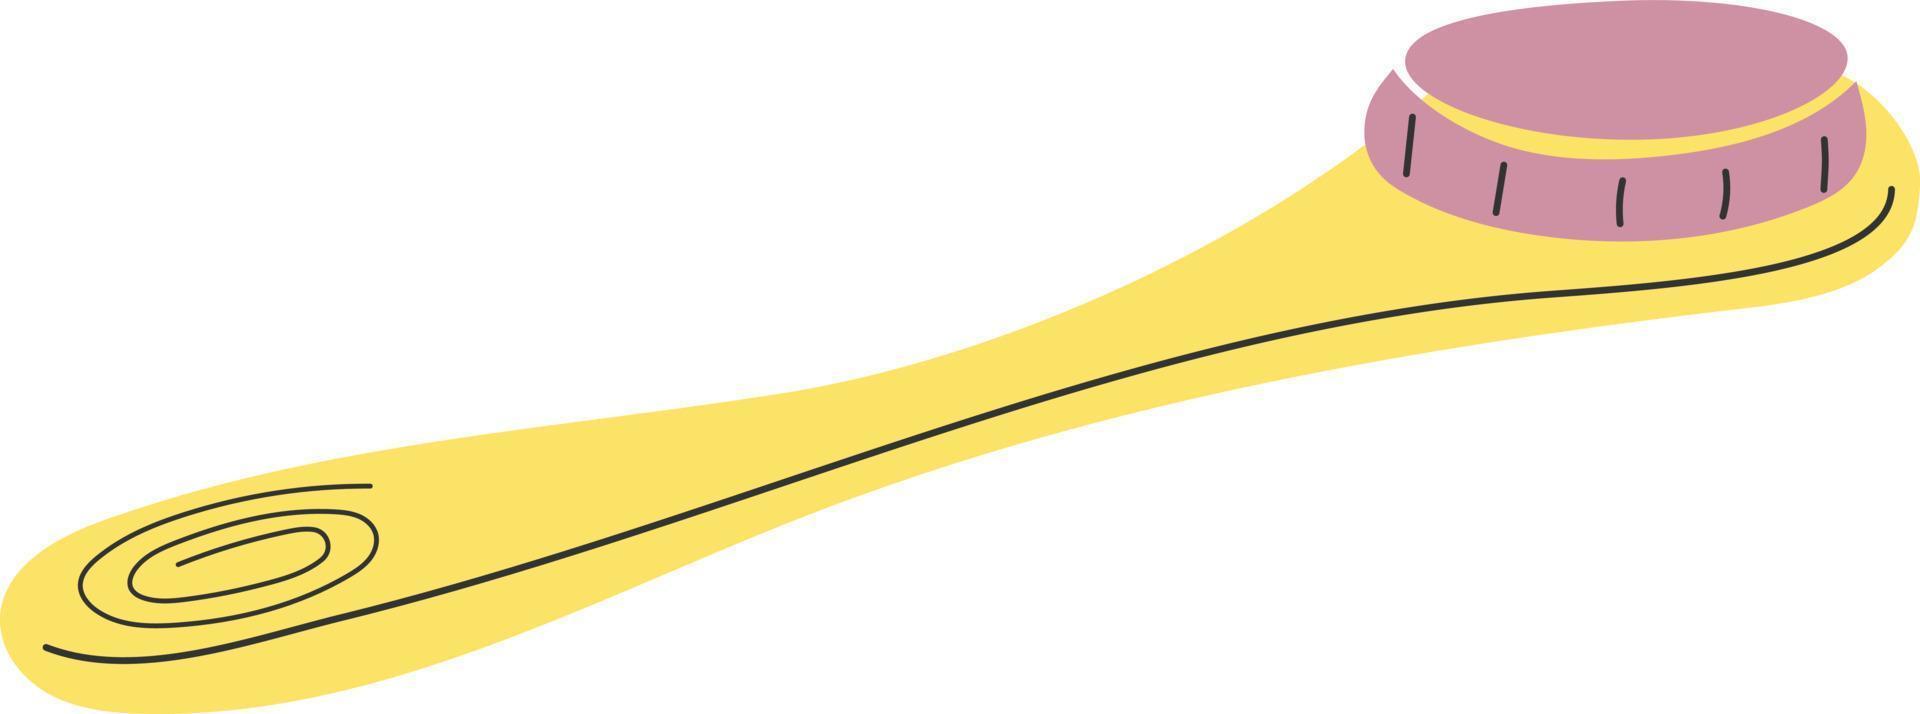 geel spa schrobber illustratie vector